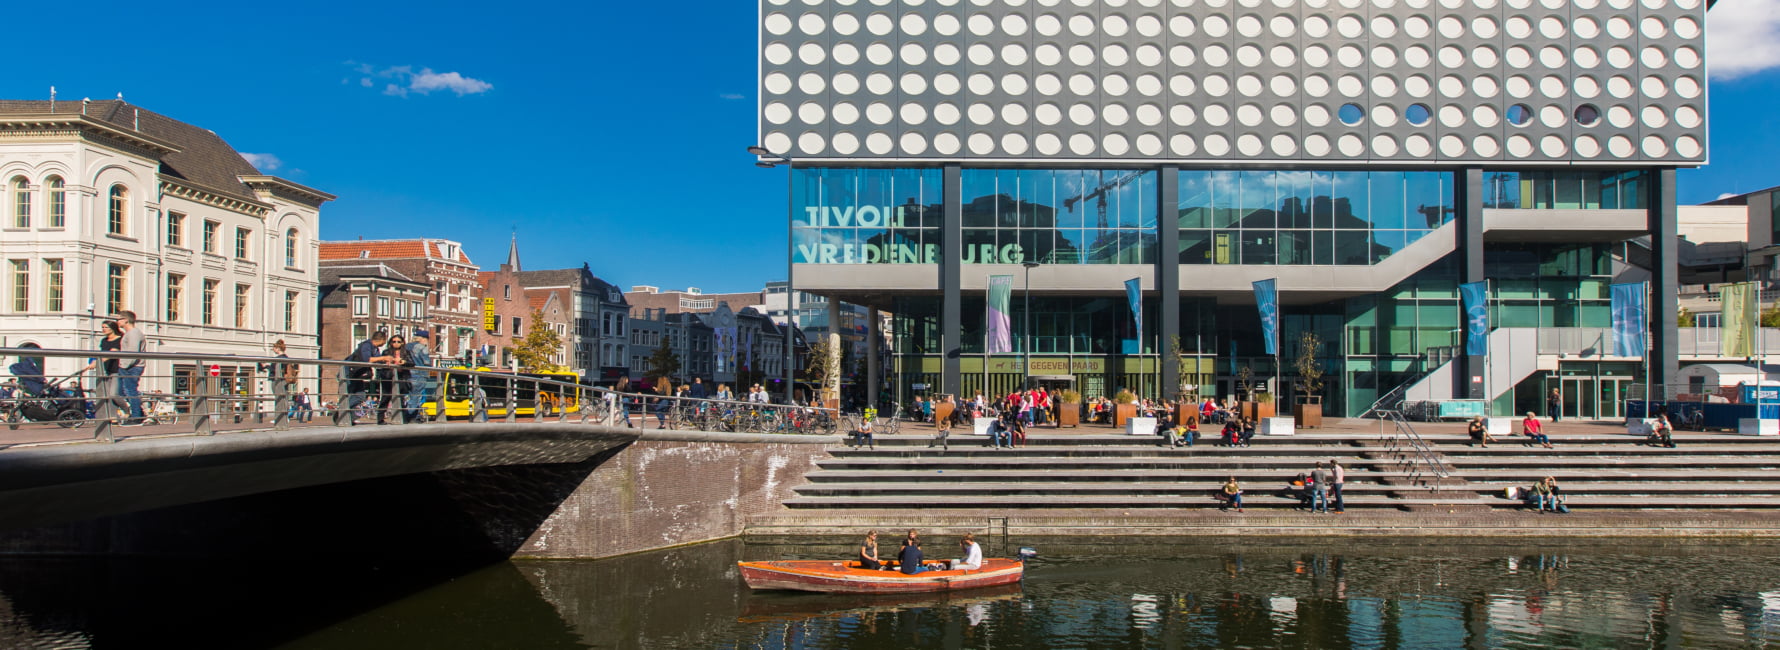 singel van Utrecht met een kano erin, op de achtergrond staat het gebouw van Tivoli Vredenburg en het centrum van Utrecht.